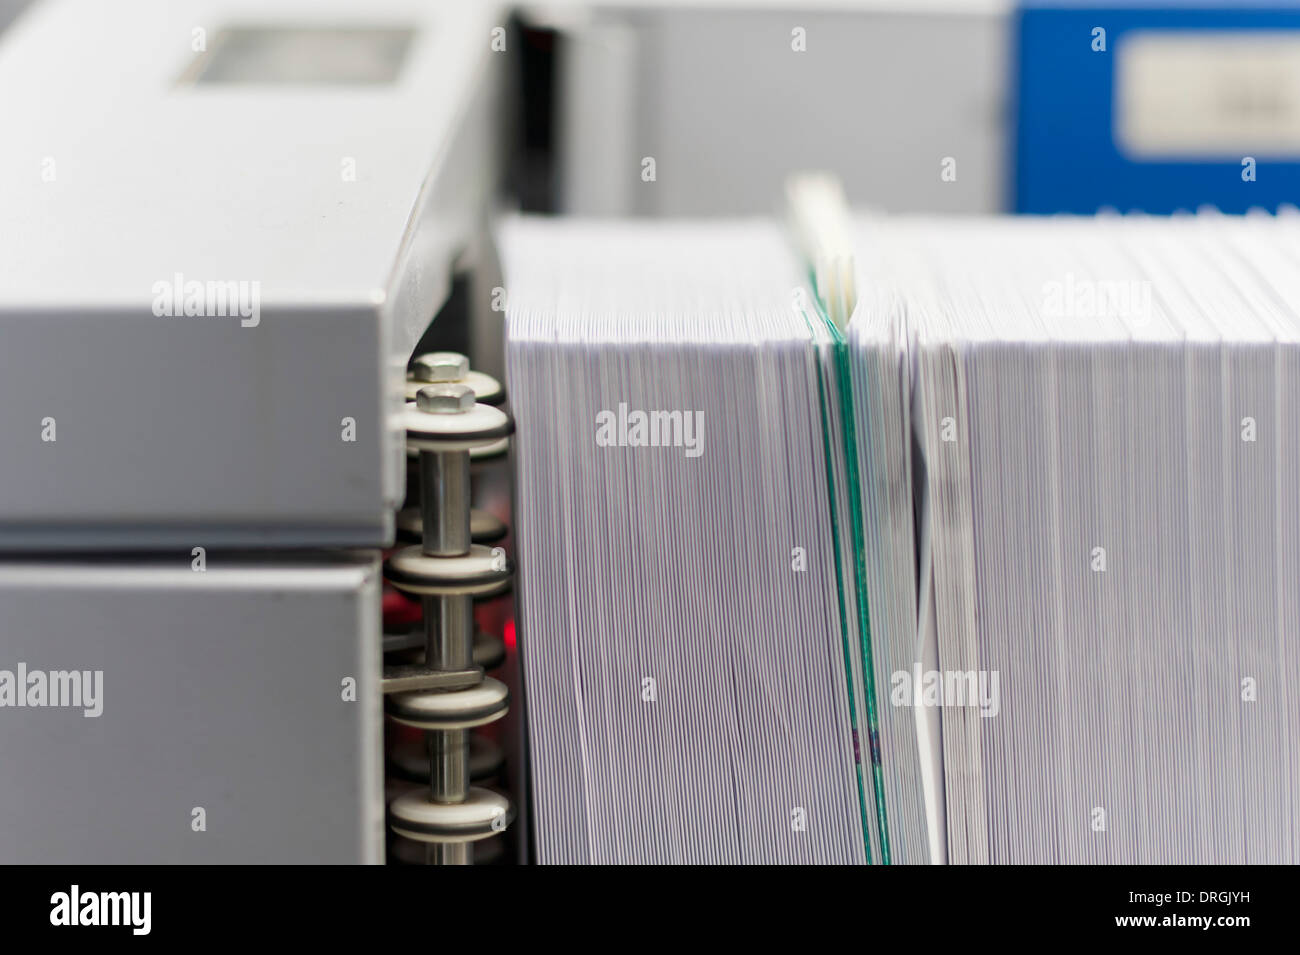 Eine Maschine für die automatische Sortierung von Postsendungen wird einen großen Stapel von Briefen verarbeitet. Stockfoto